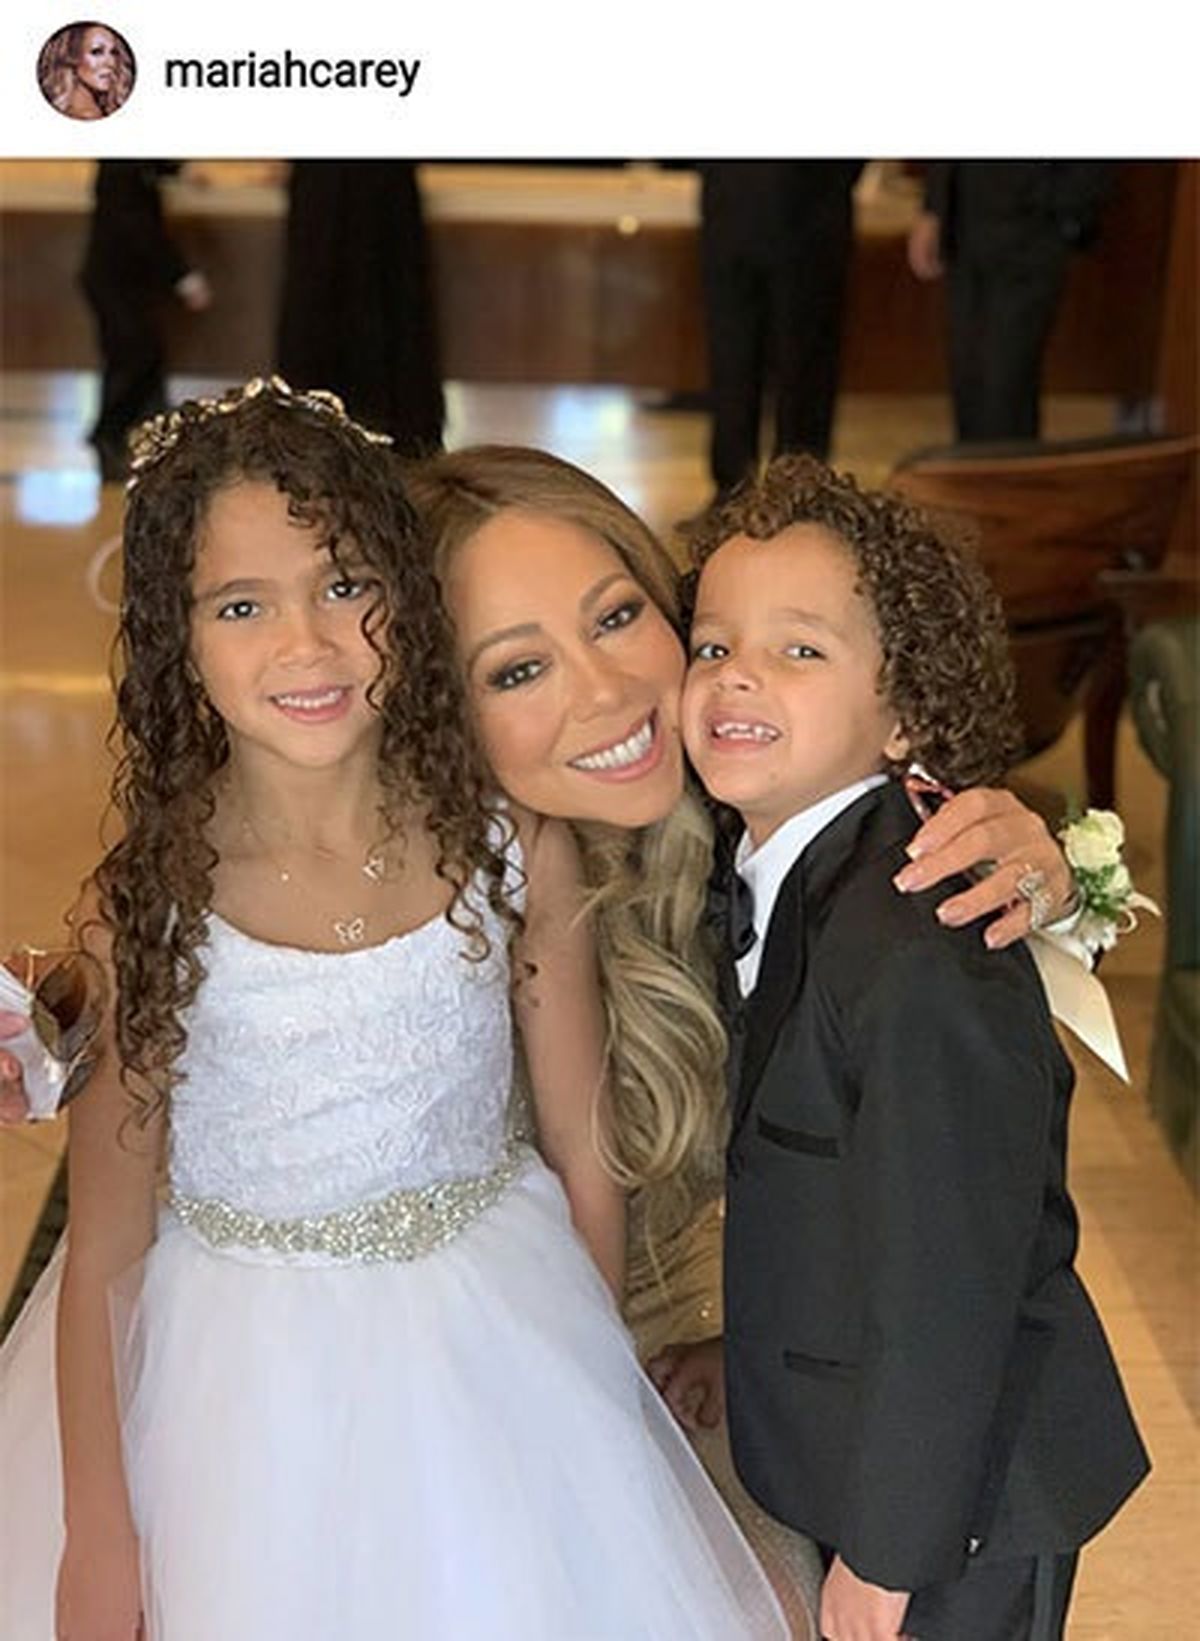 هنرپیشه معروف آمریکایی با فرزندانش در مراسم عروسی/عکس